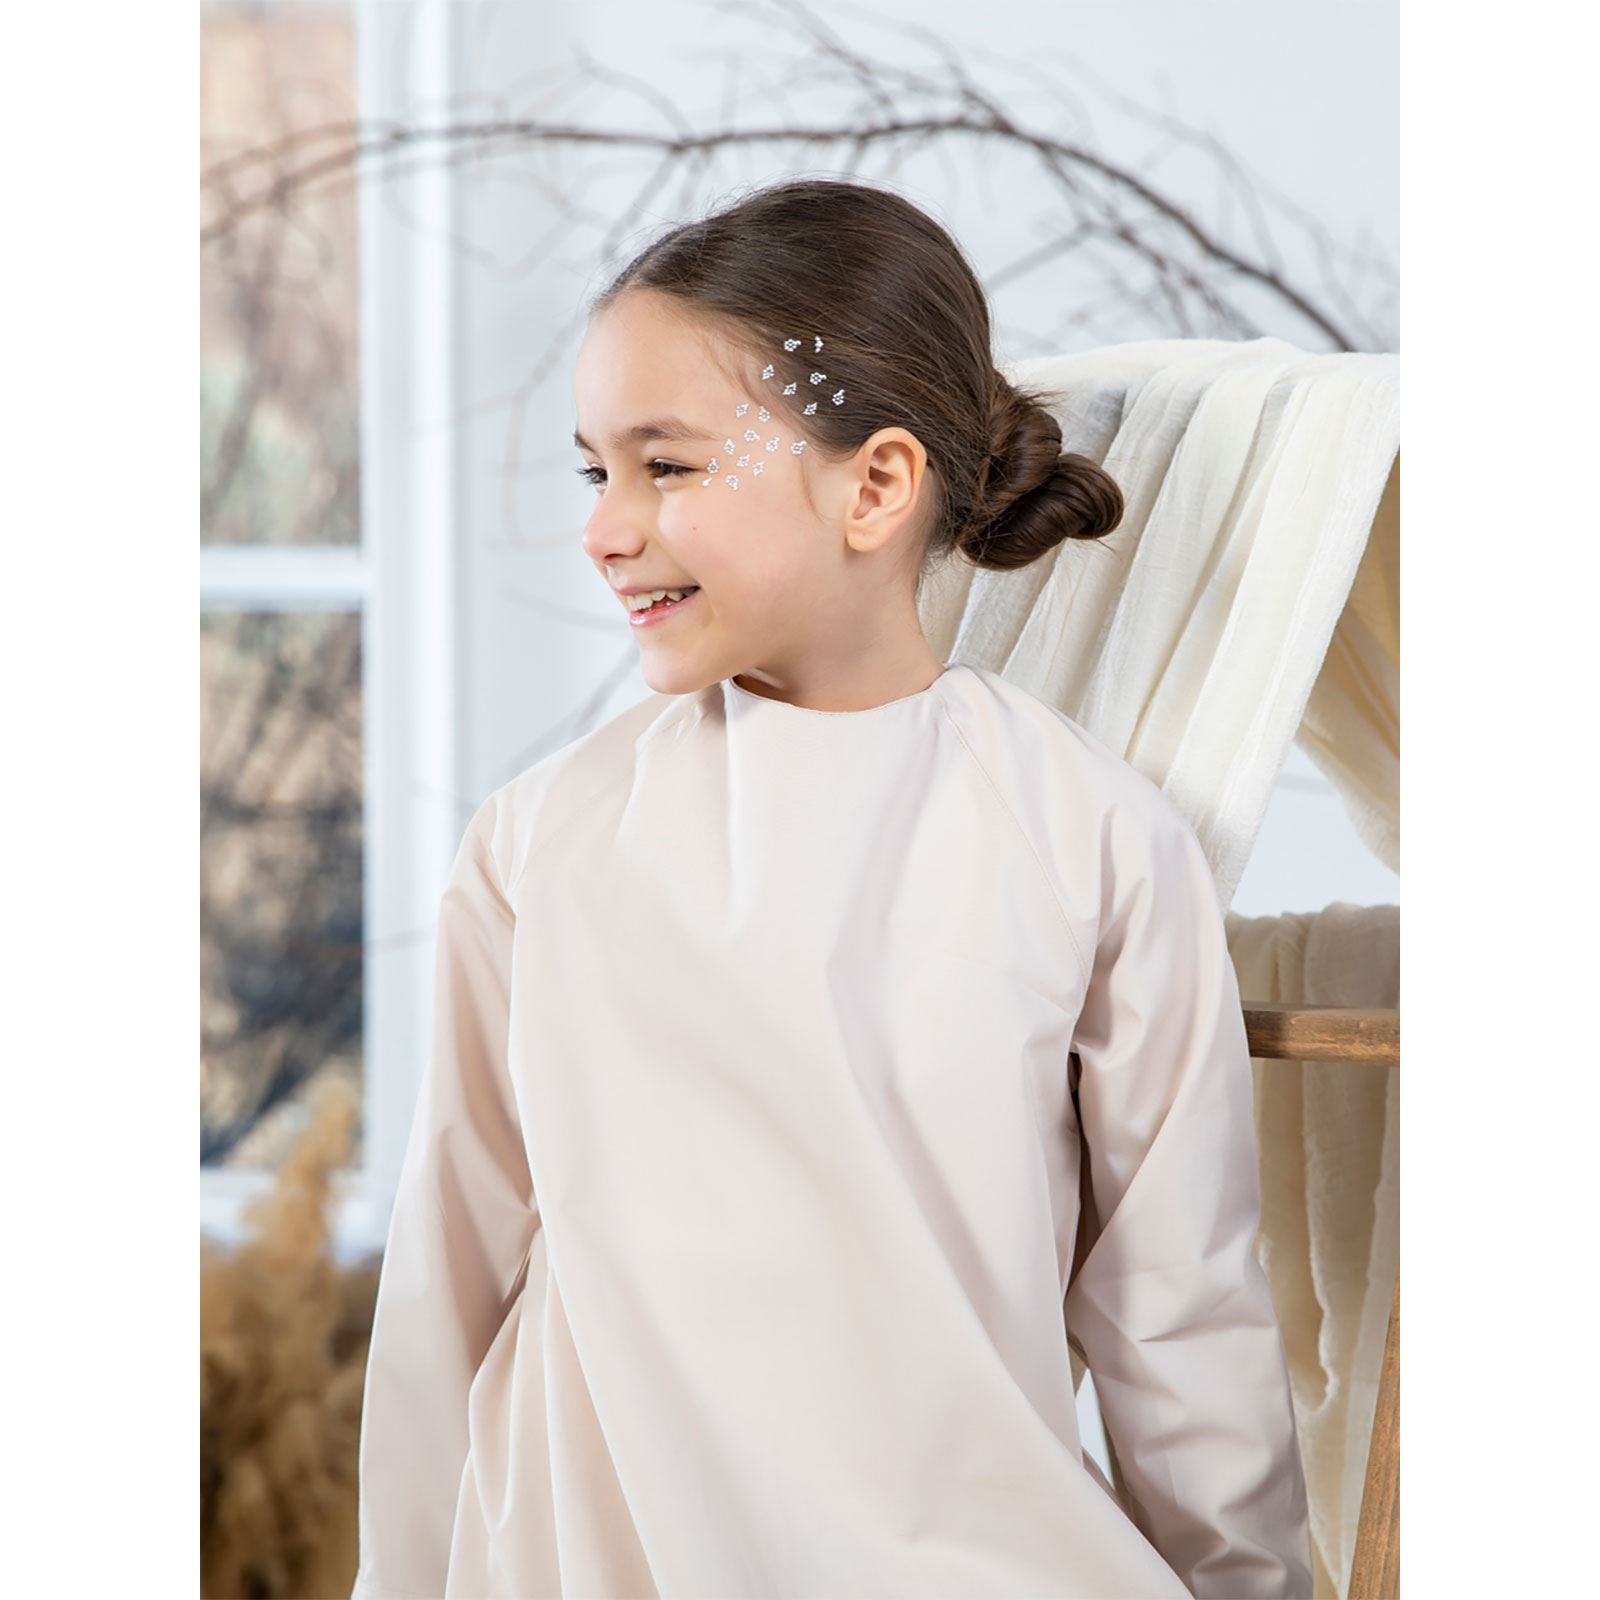 Burqa Bala Kız Çocuk Nur Kız Elbise 6-12 Yaş Bej